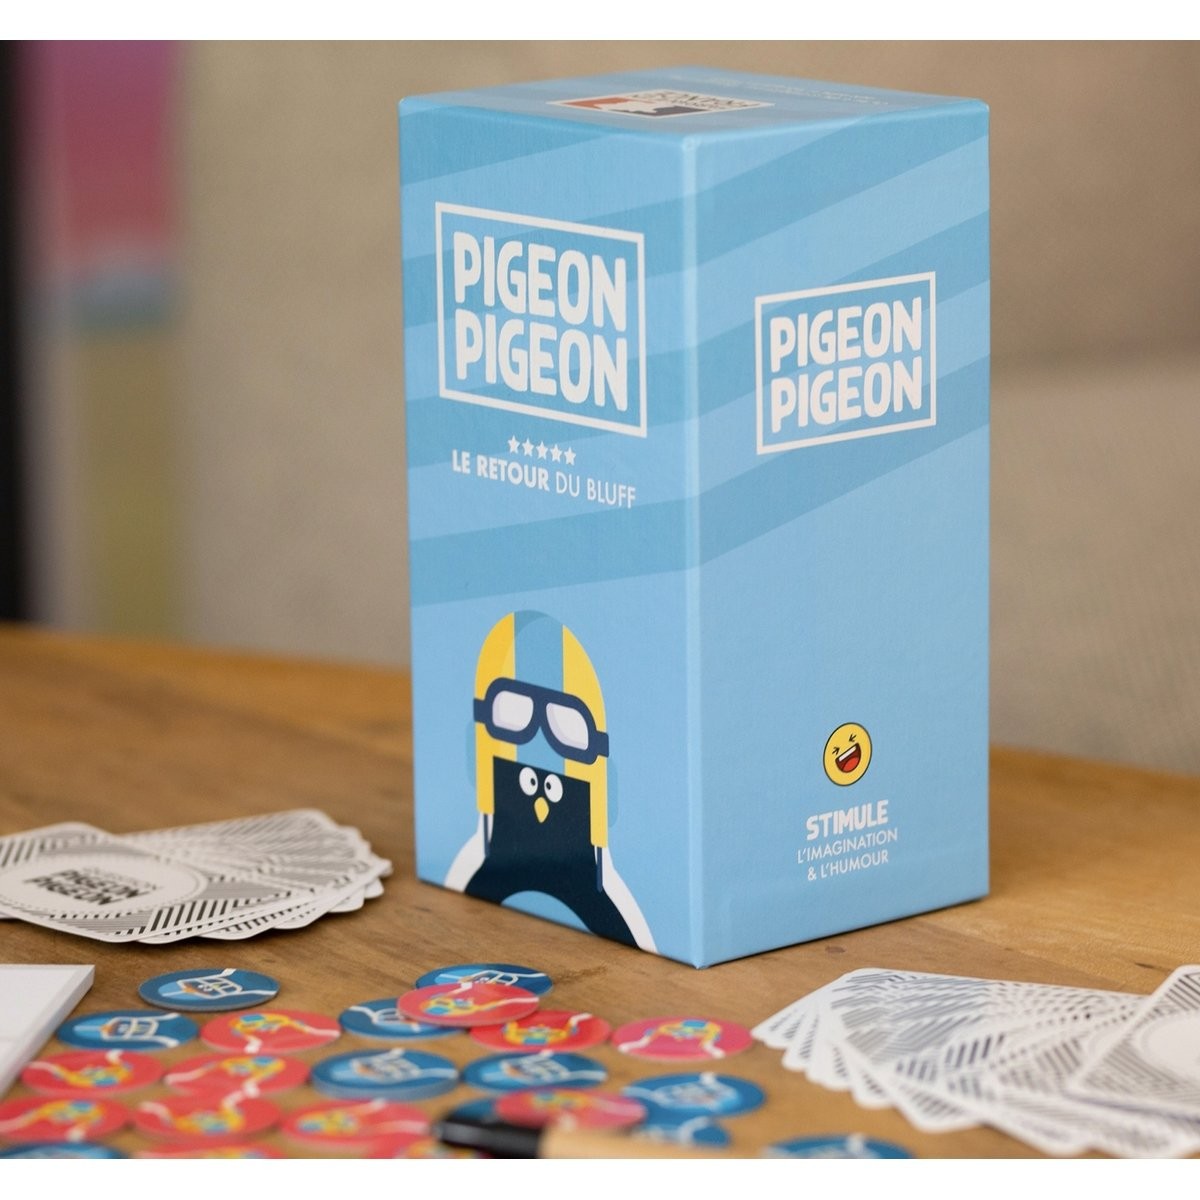 Pigeon Pigeon - Jeux de société - Pigeon Pigeon - éditions Napoleon